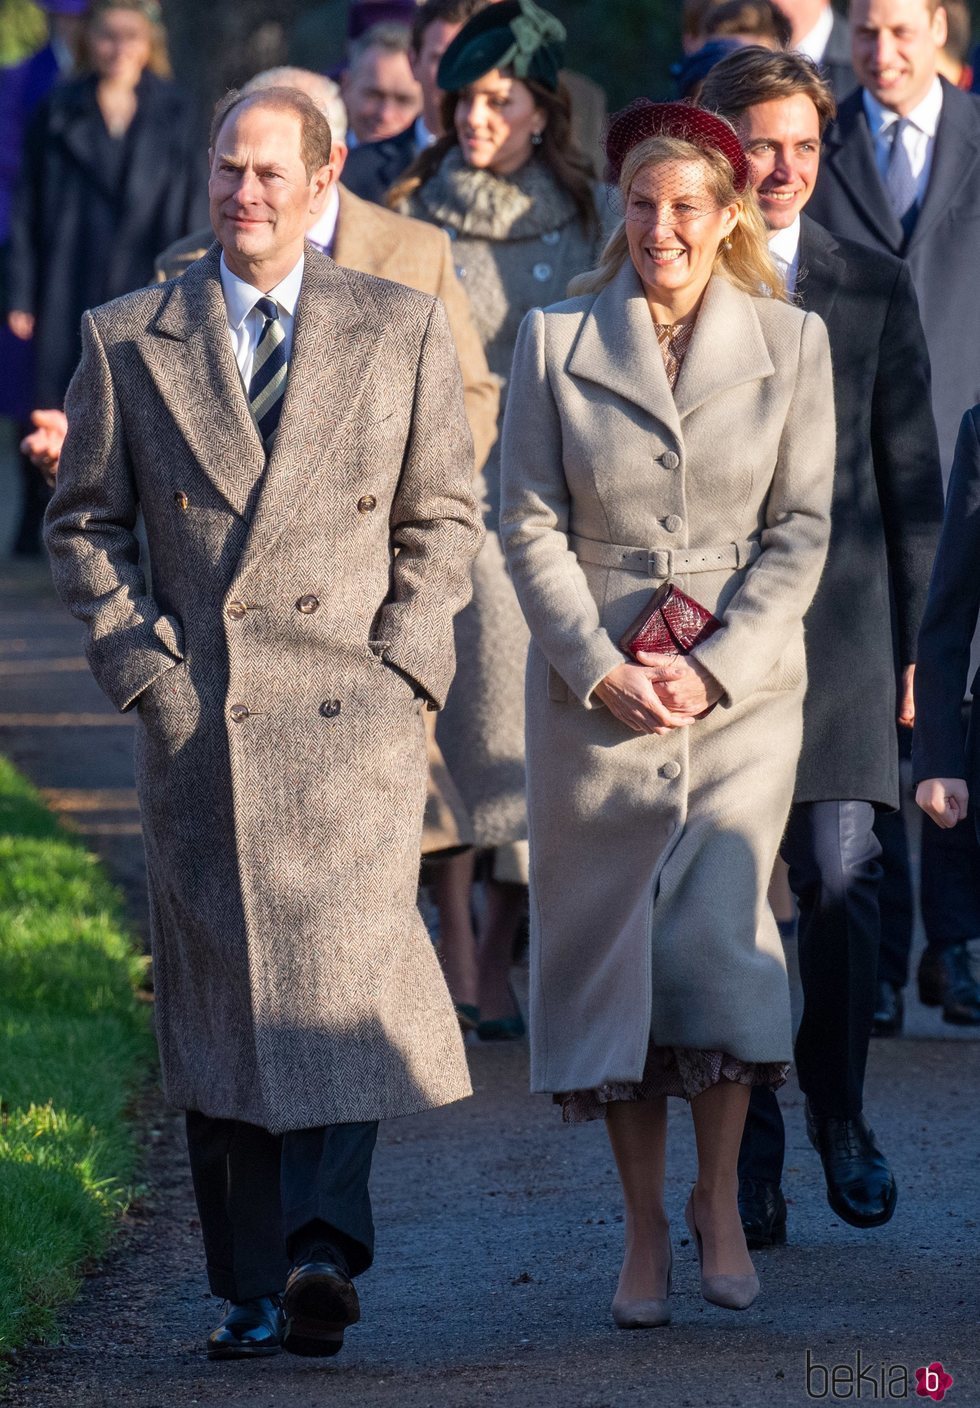 El Príncipe Eduardo y la Condesa de Wessex en la Misa de Navidad 2019